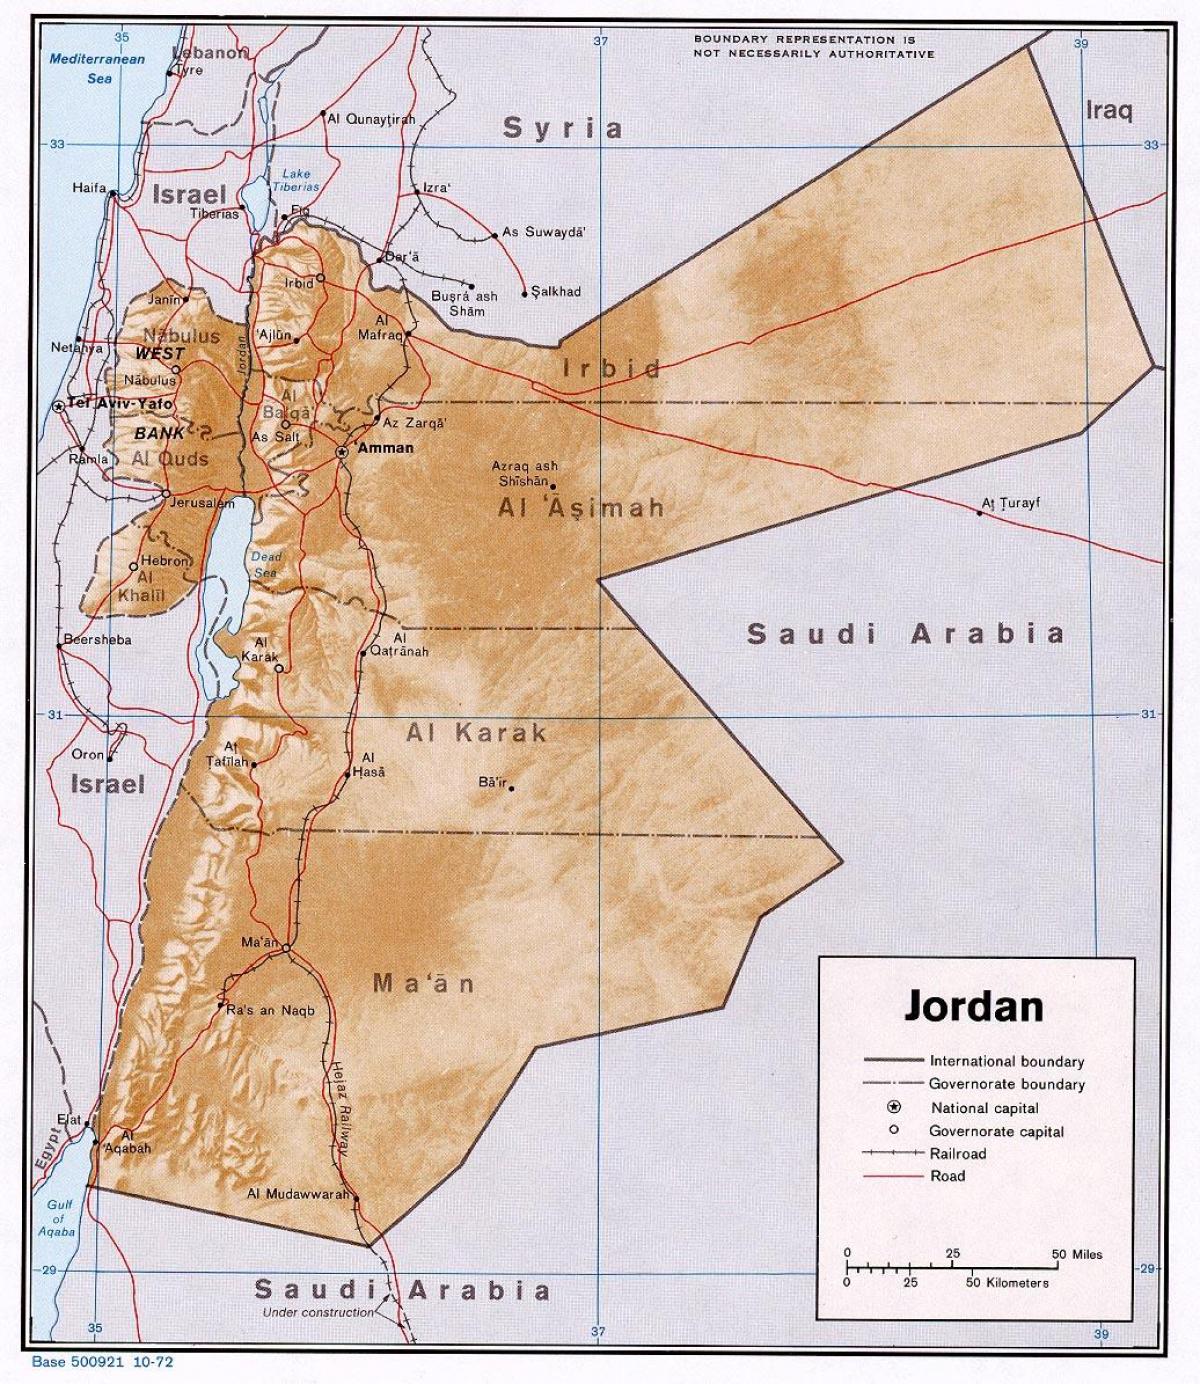 რუკაზე აჩვენებს Jordan